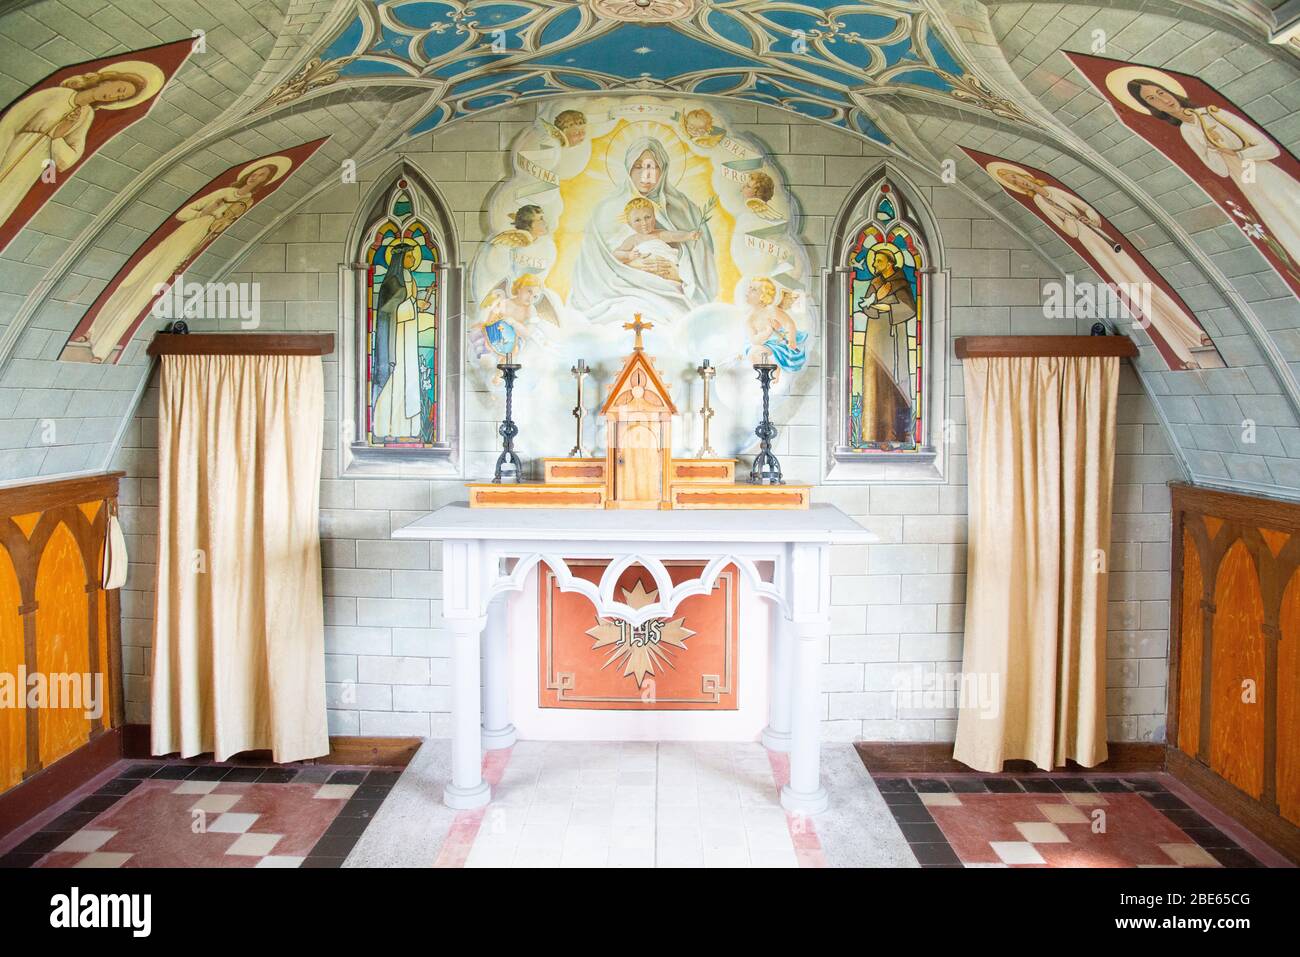 Cette chapelle a été construite par des prisonniers de guerre italiens sur une île Orkney à l'aide d'une cabane Nissan peinte à l'intérieur et à l'extérieur. Ils ont également ajouté des fonctions d'église. Banque D'Images